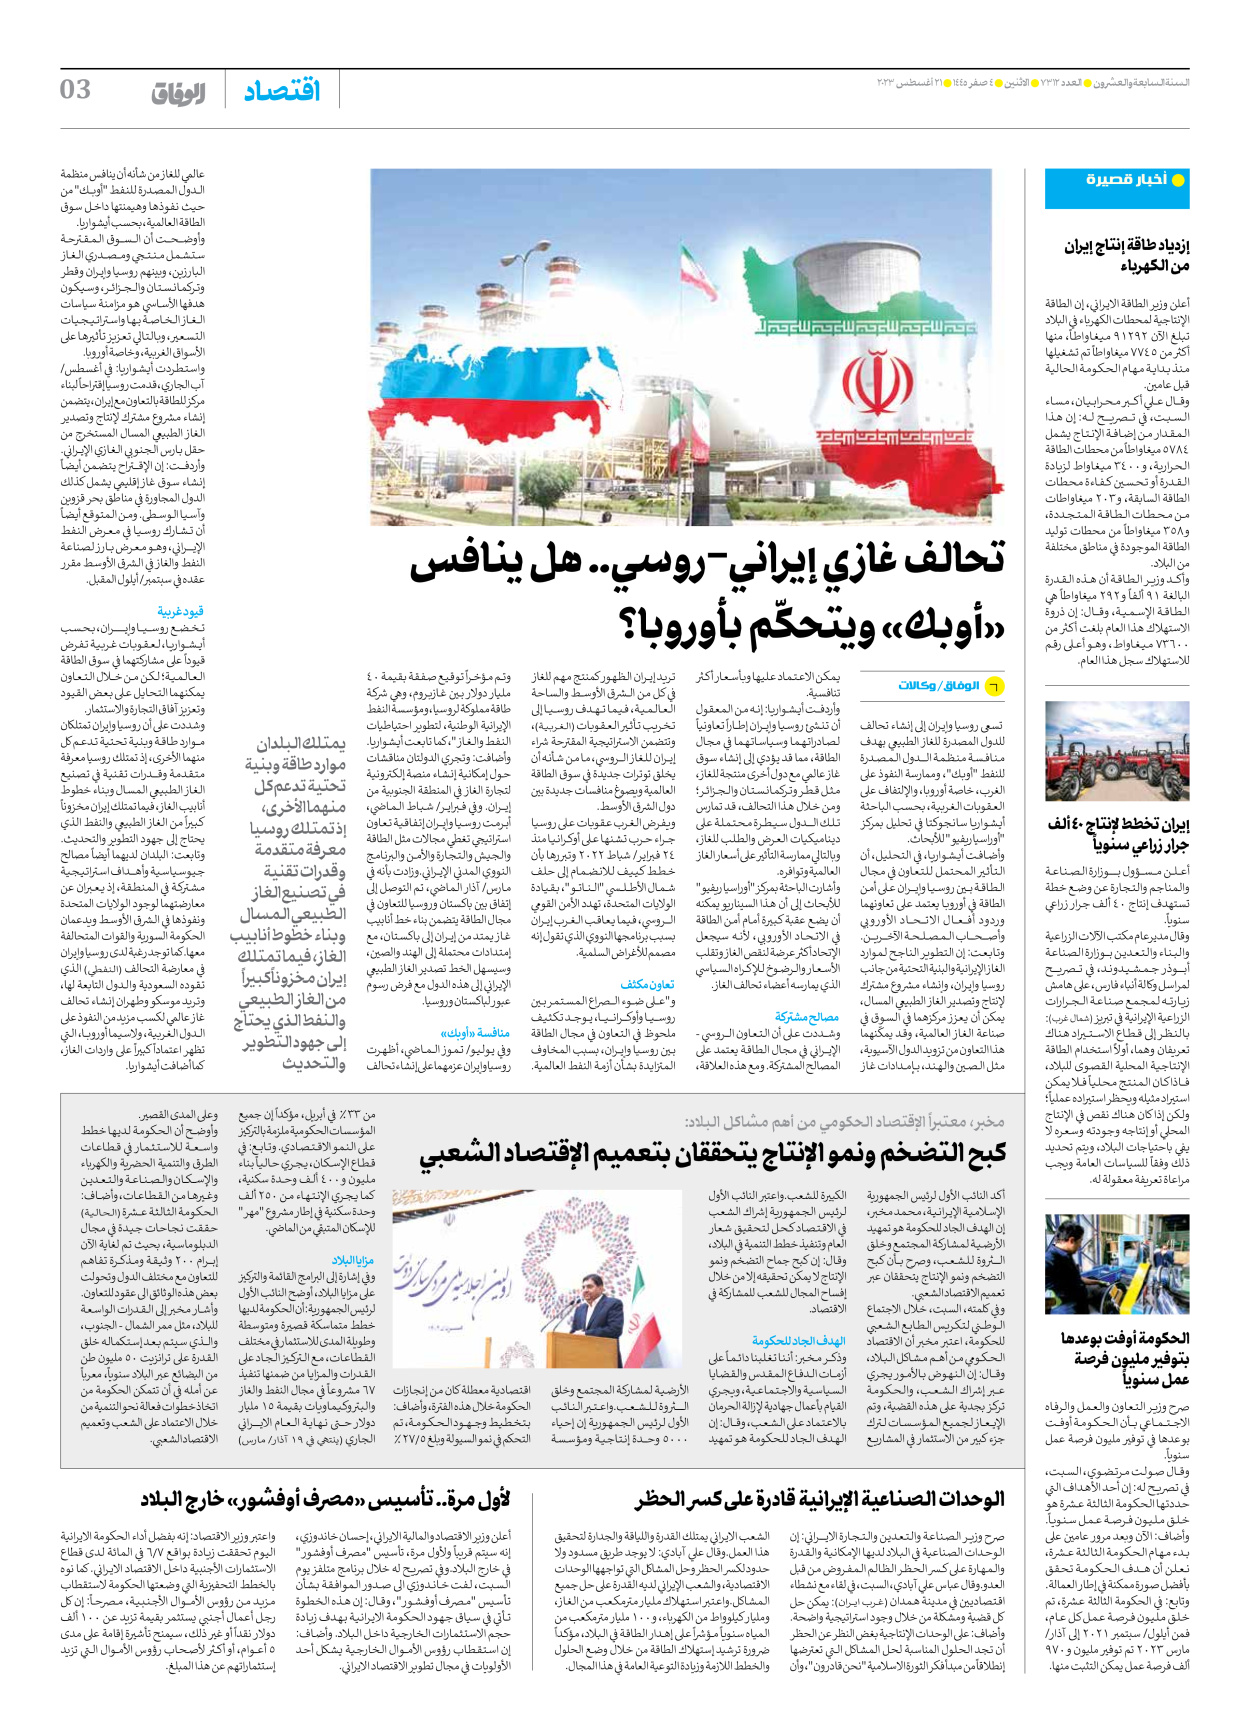 صحیفة ایران الدولیة الوفاق - العدد سبعة آلاف وثلاثمائة واثنا عشر - ٢١ أغسطس ٢٠٢٣ - الصفحة ۳